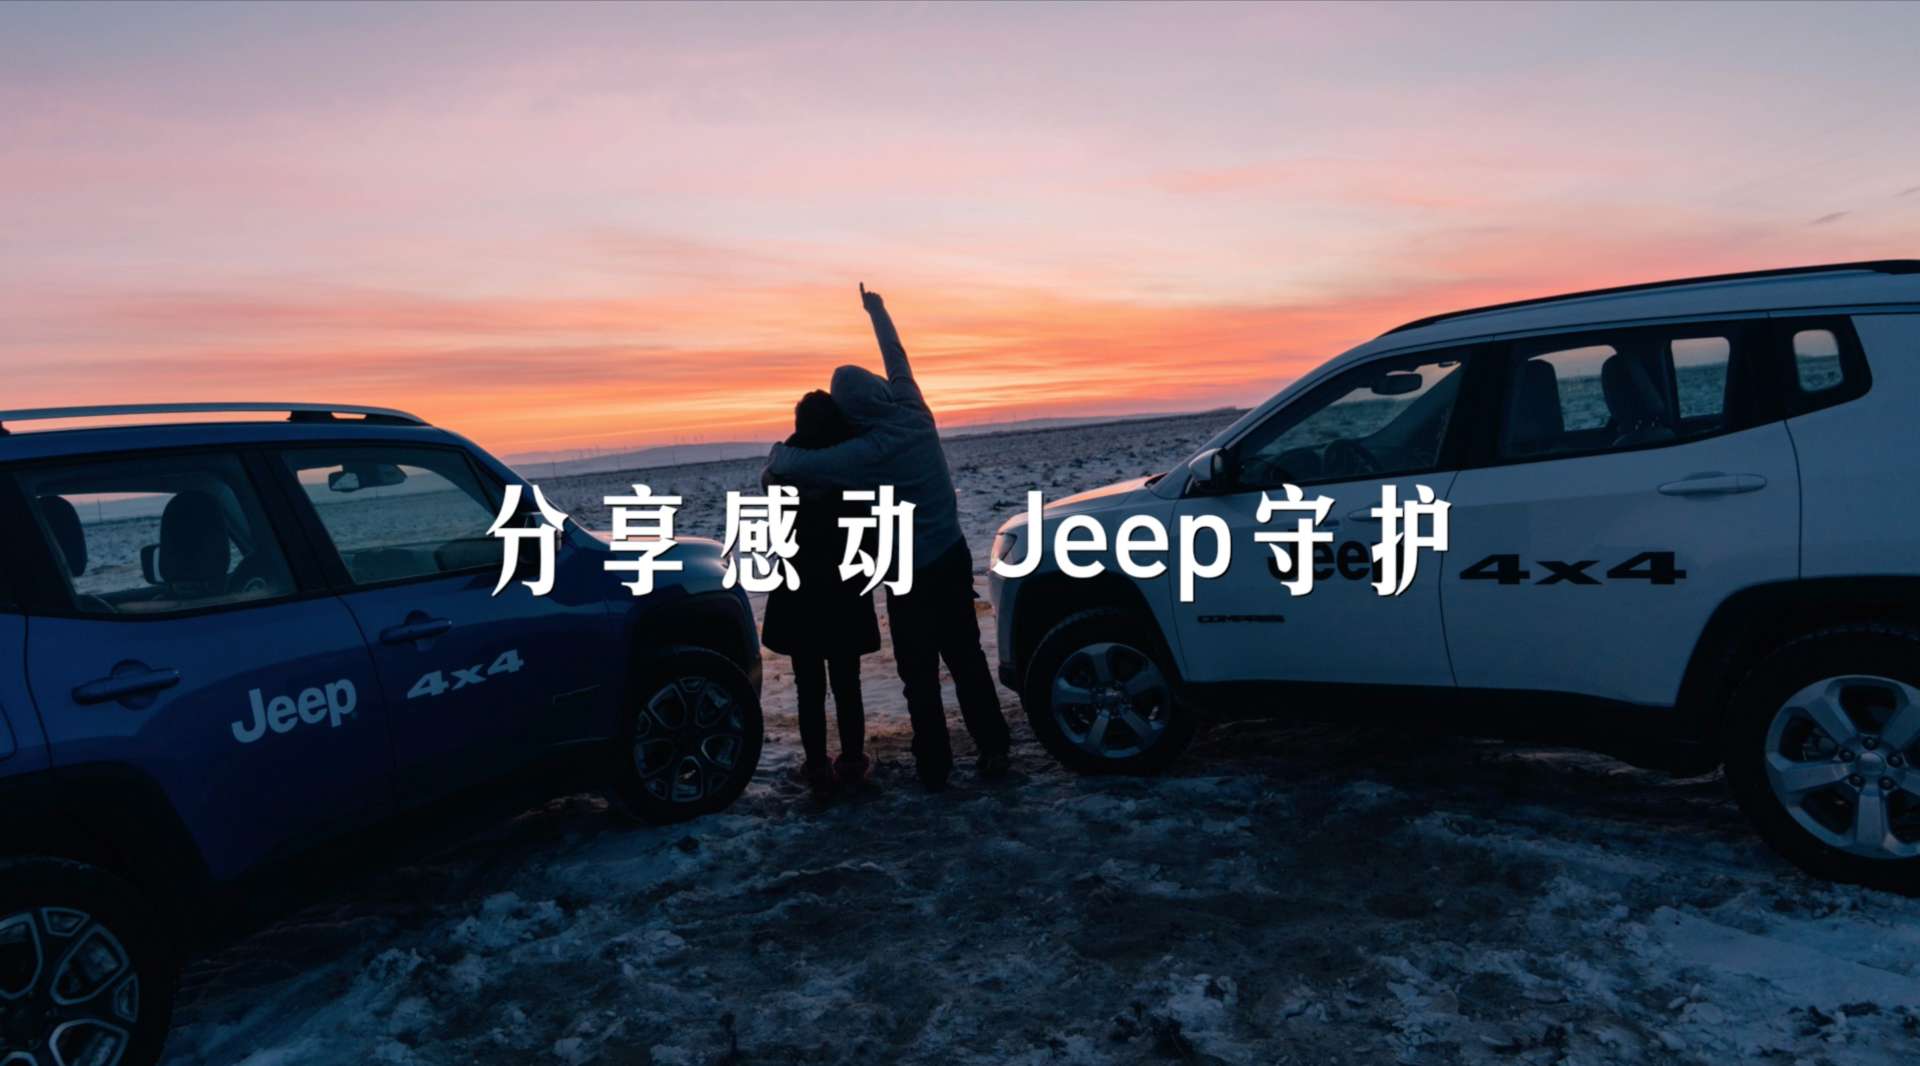 Jeep 4x4《分享感动 Jeep守护》朋友圈系列短广告